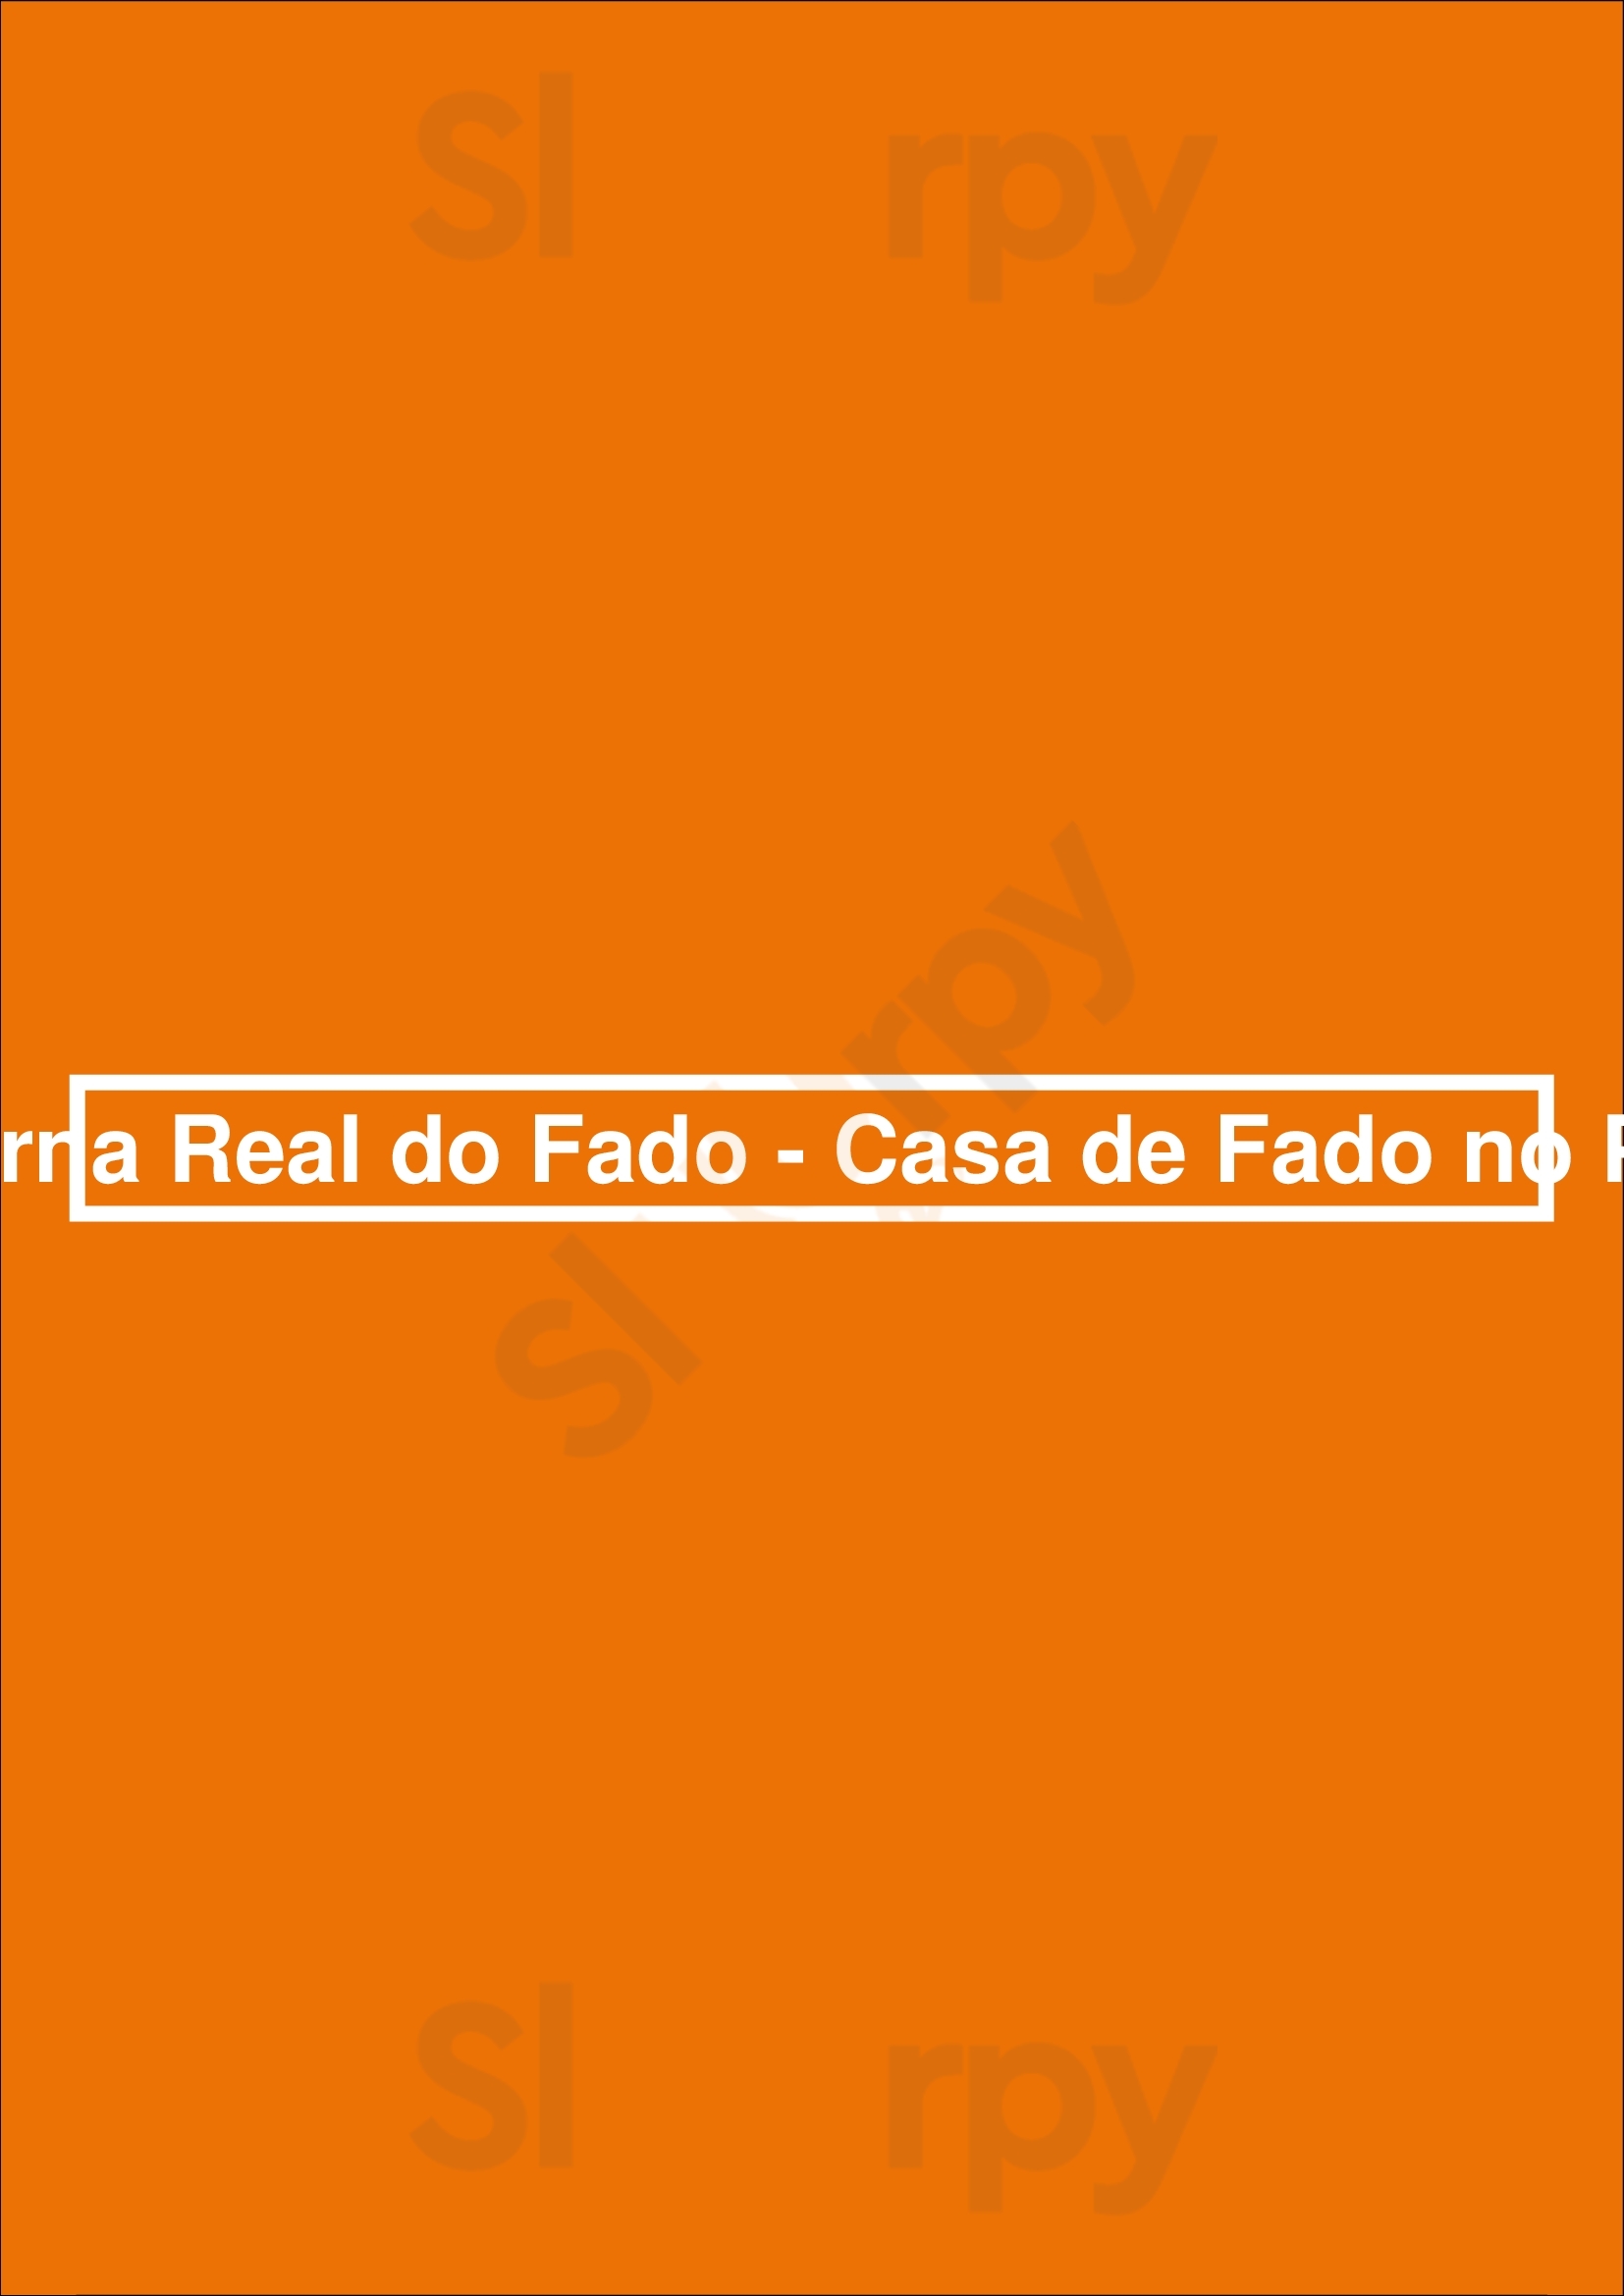 Taberna Real Do Fado - Casa De Fado No Porto Porto Menu - 1